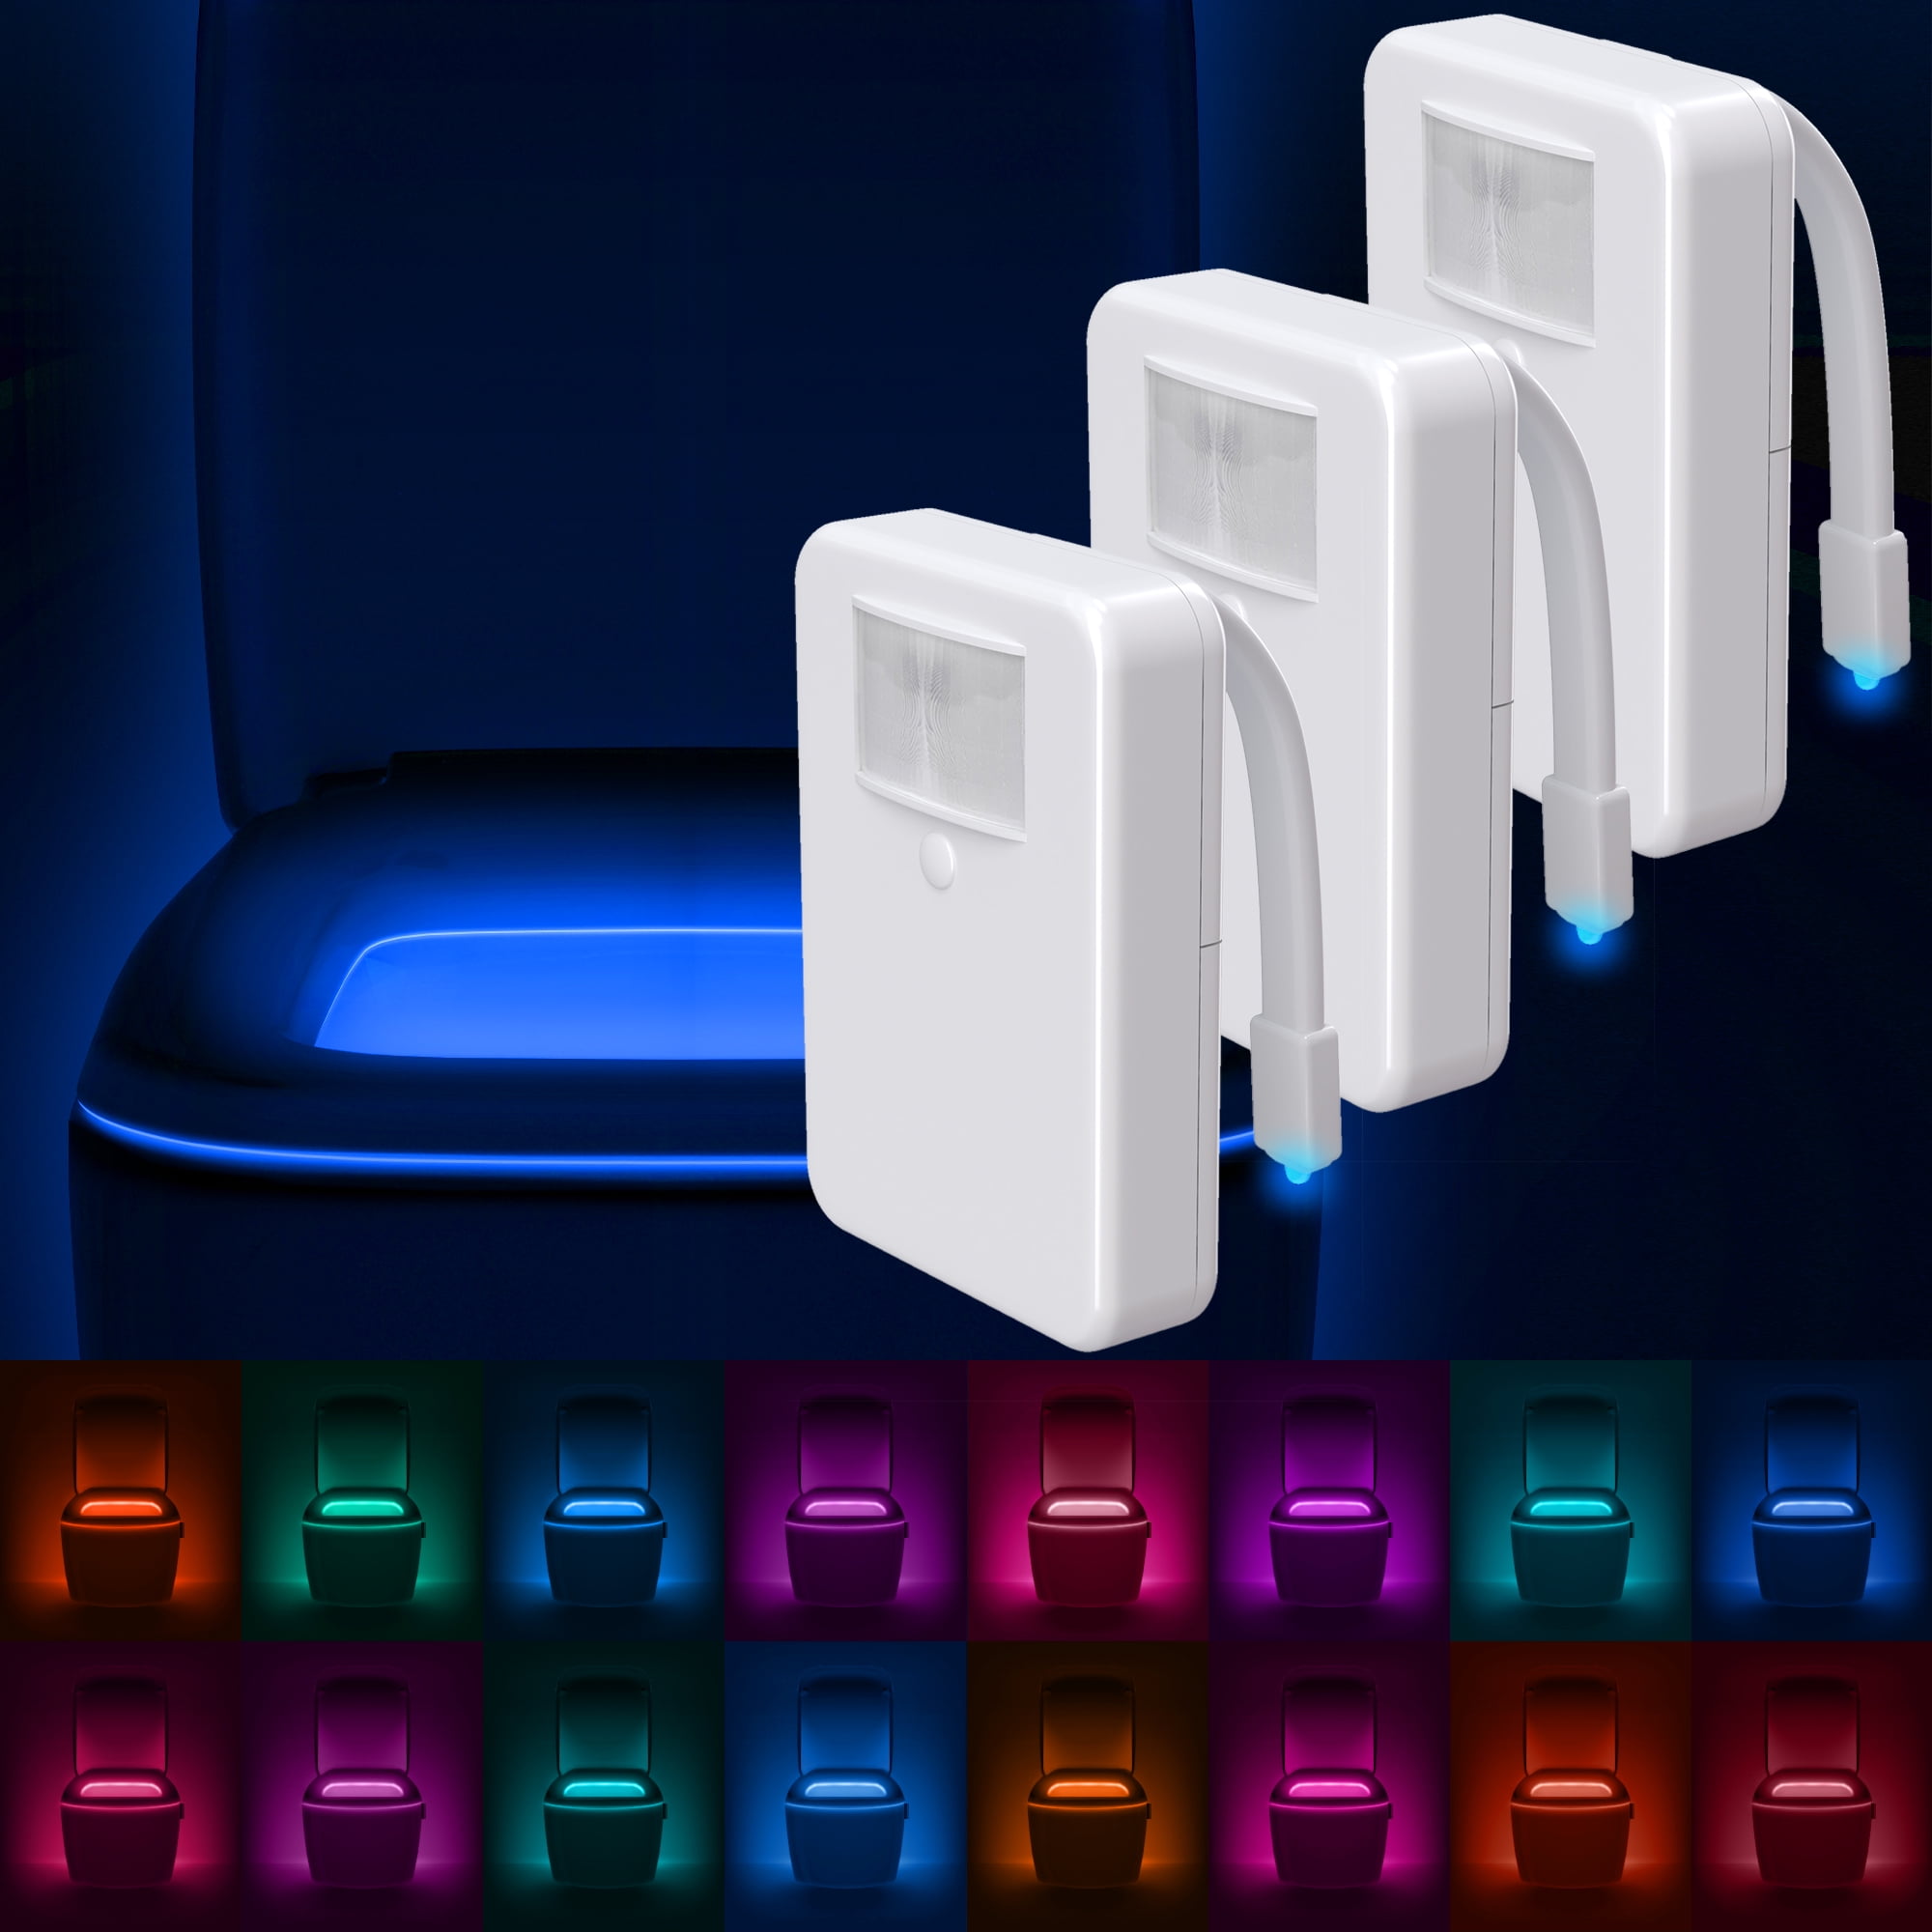 Details about   Toilet Light Motion Detection Advanced 16-Color LED Toilet Bowl Light